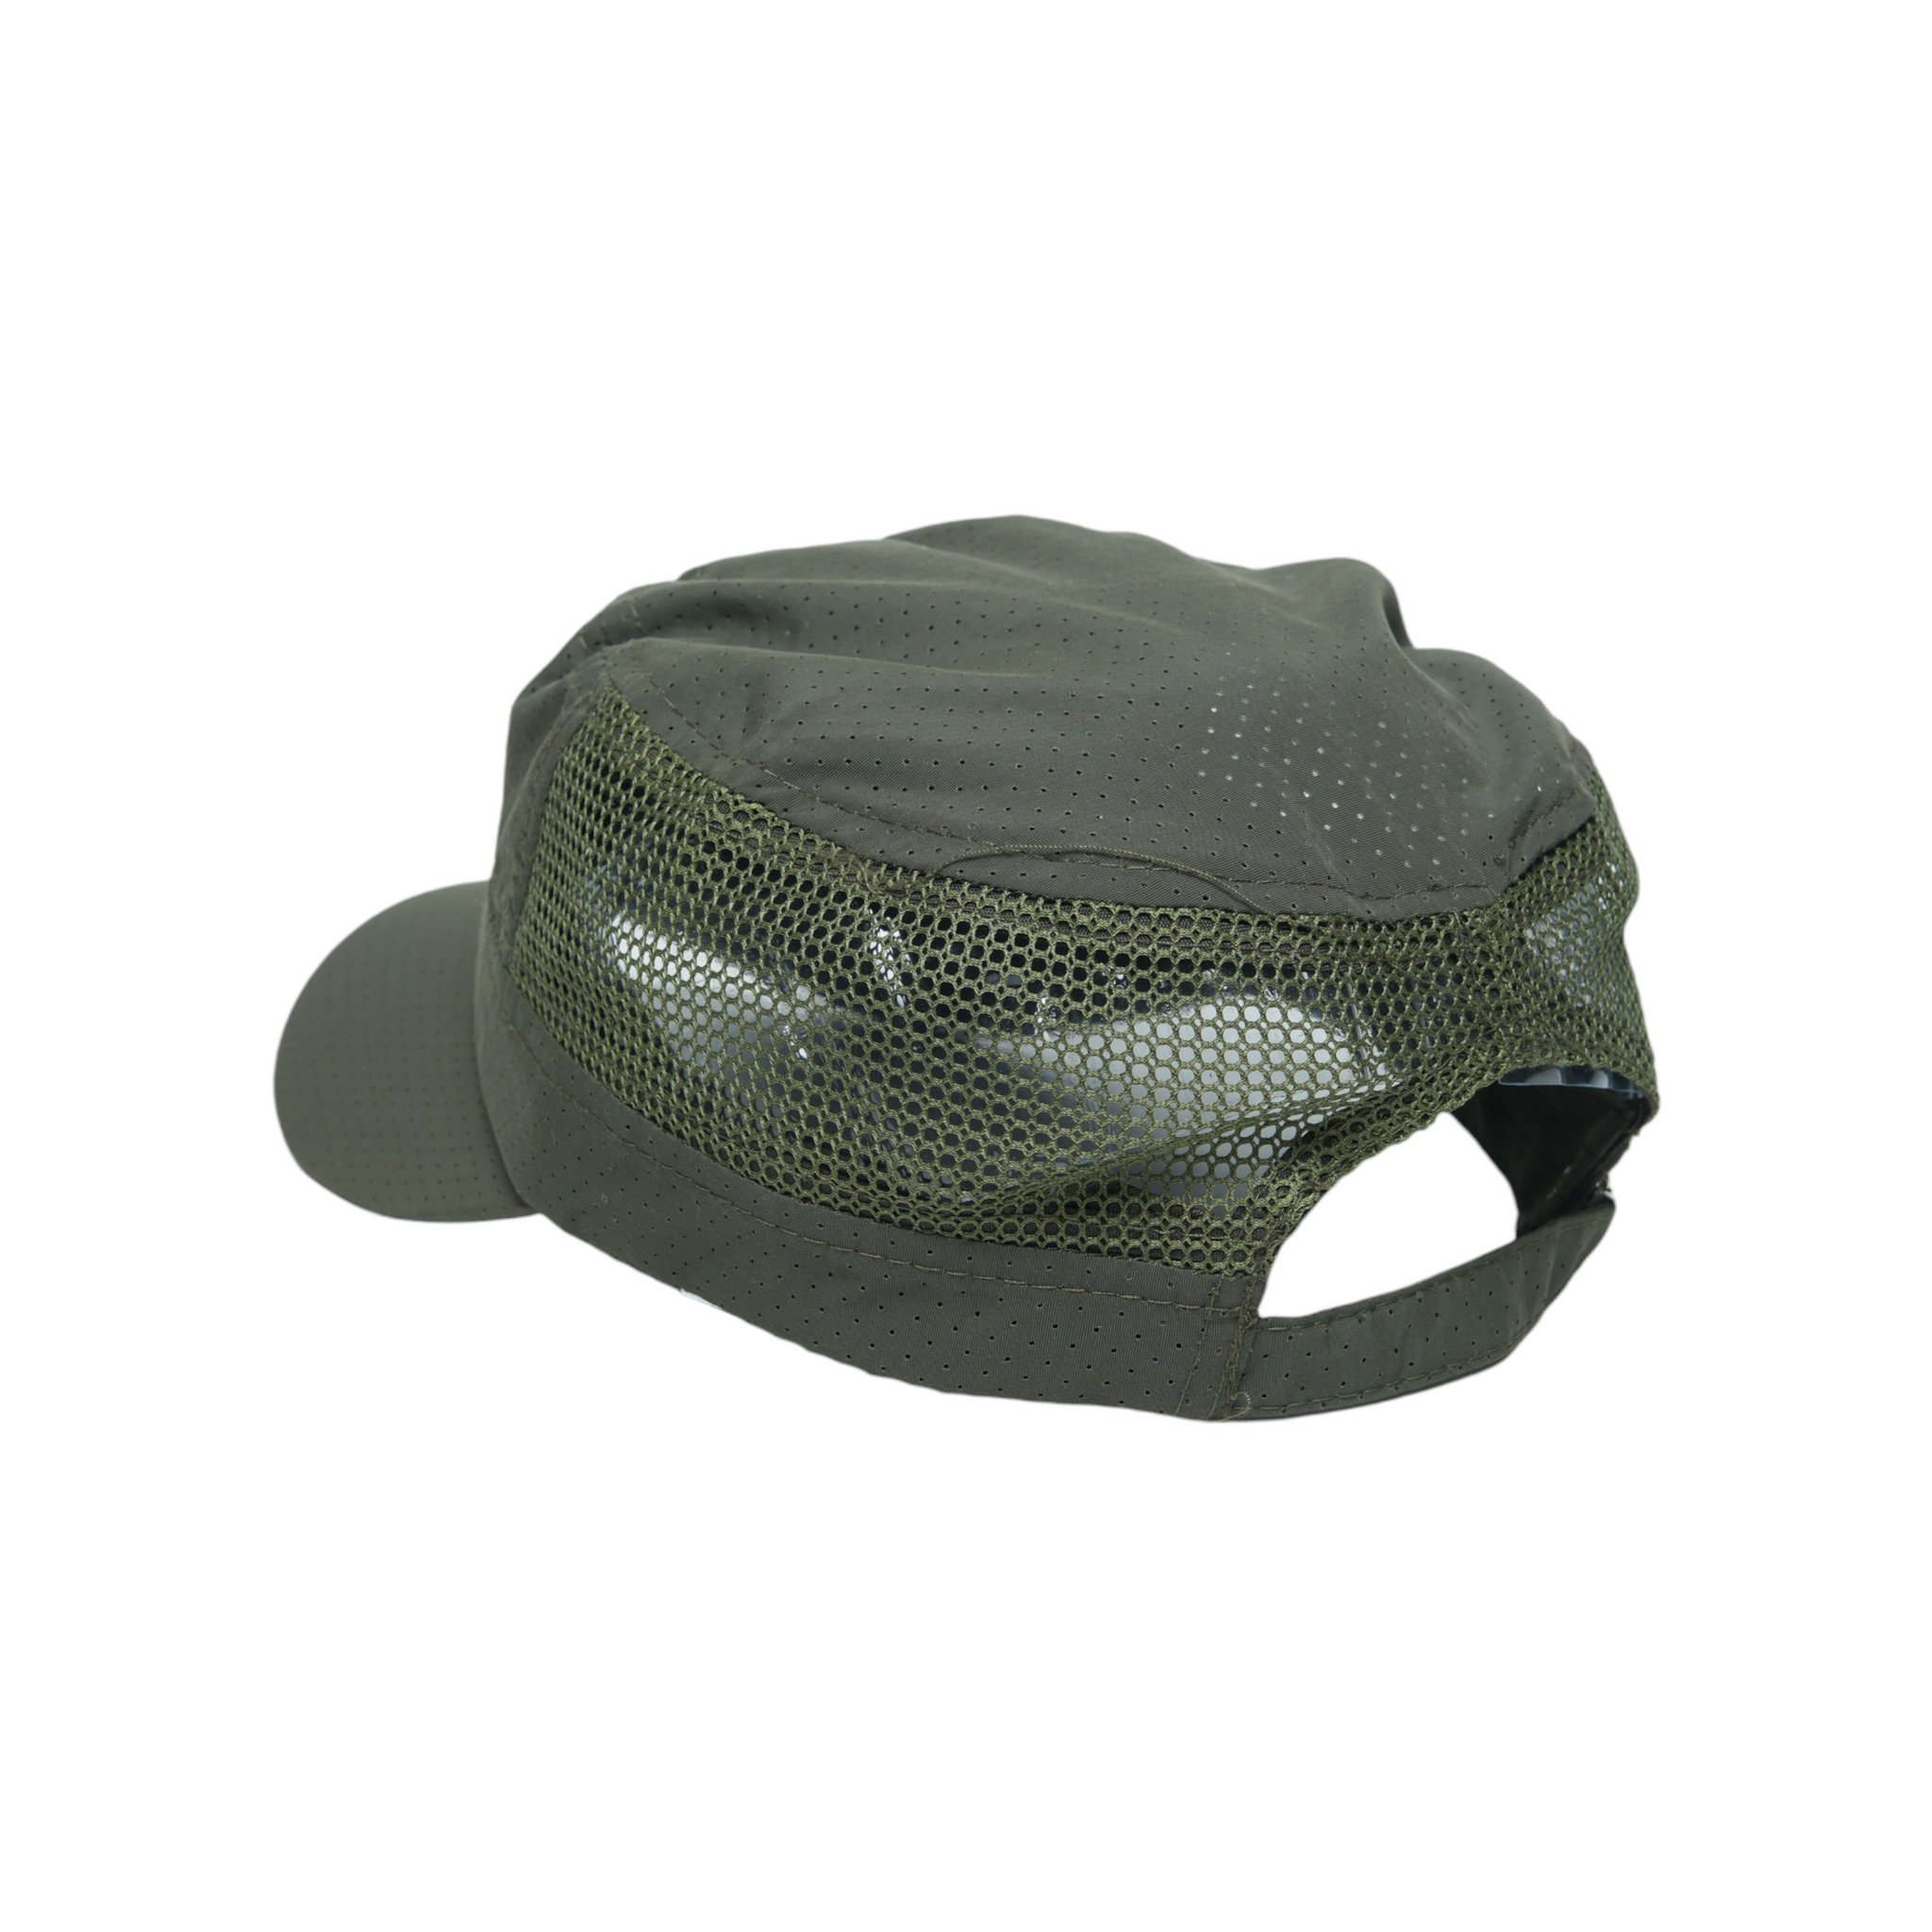 Chokore Breathable Mesh Flat Top Cap (Army Green)